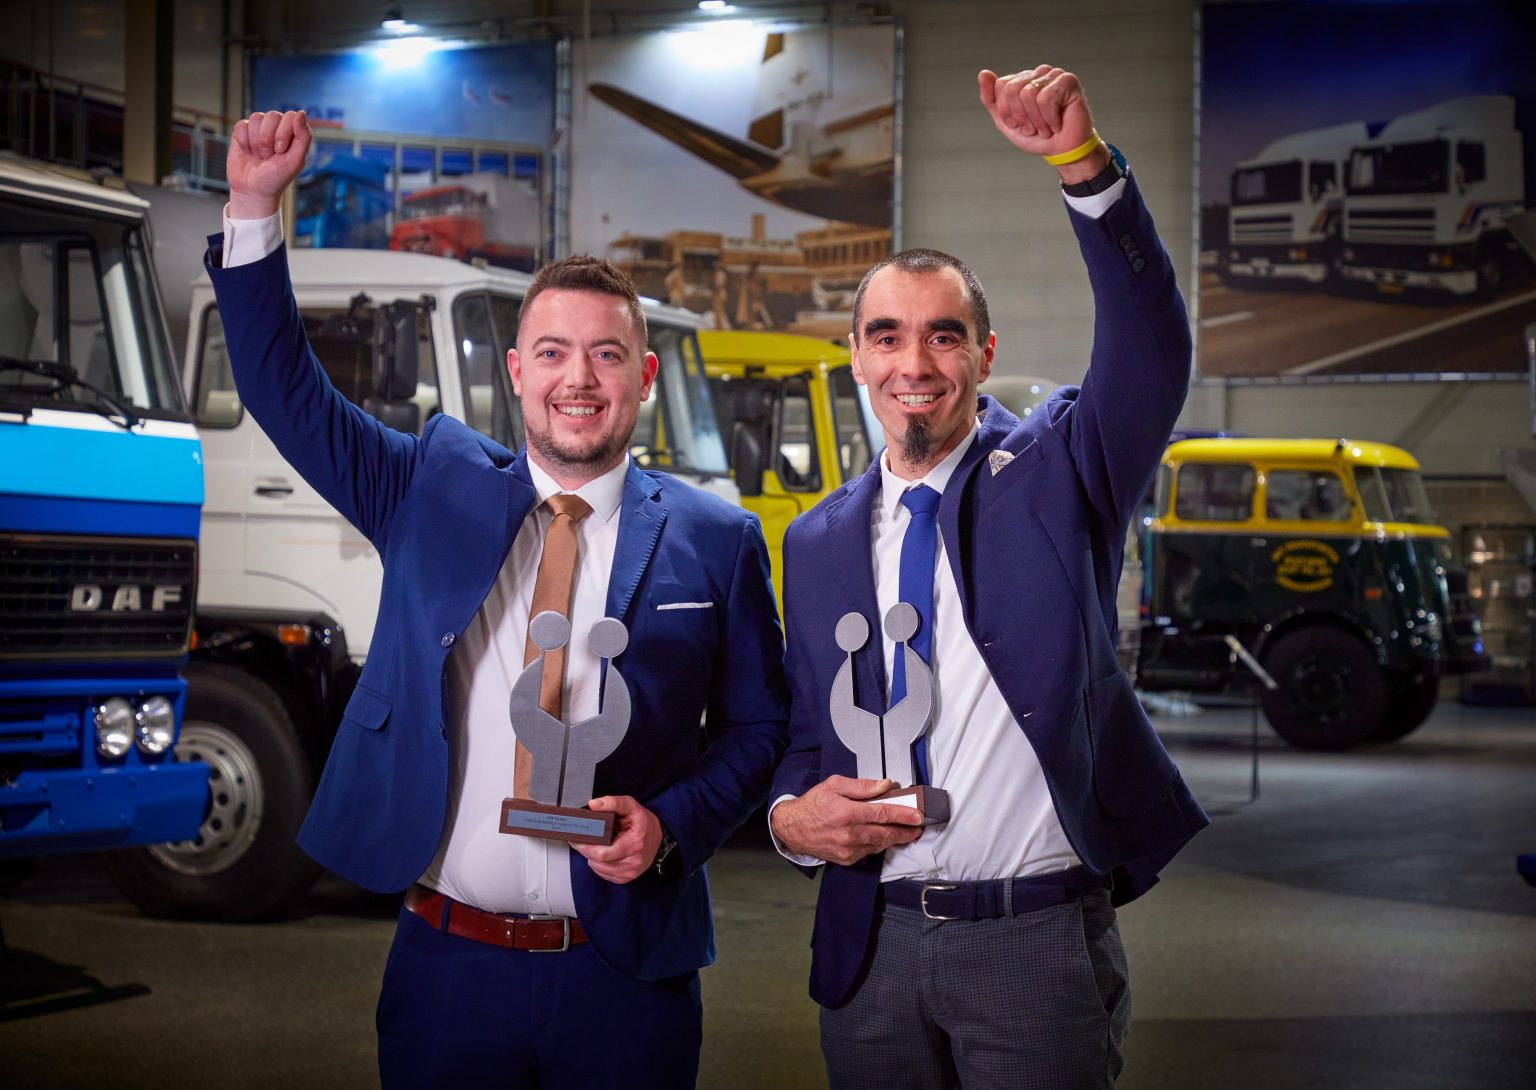 Il Service Advisor Daniele Cagol (a sinistra) e il tecnico Giacomo Paladino (a destra) di Interservice S.p.A. di Trento, Italia, hanno ricevuto i loro trofei